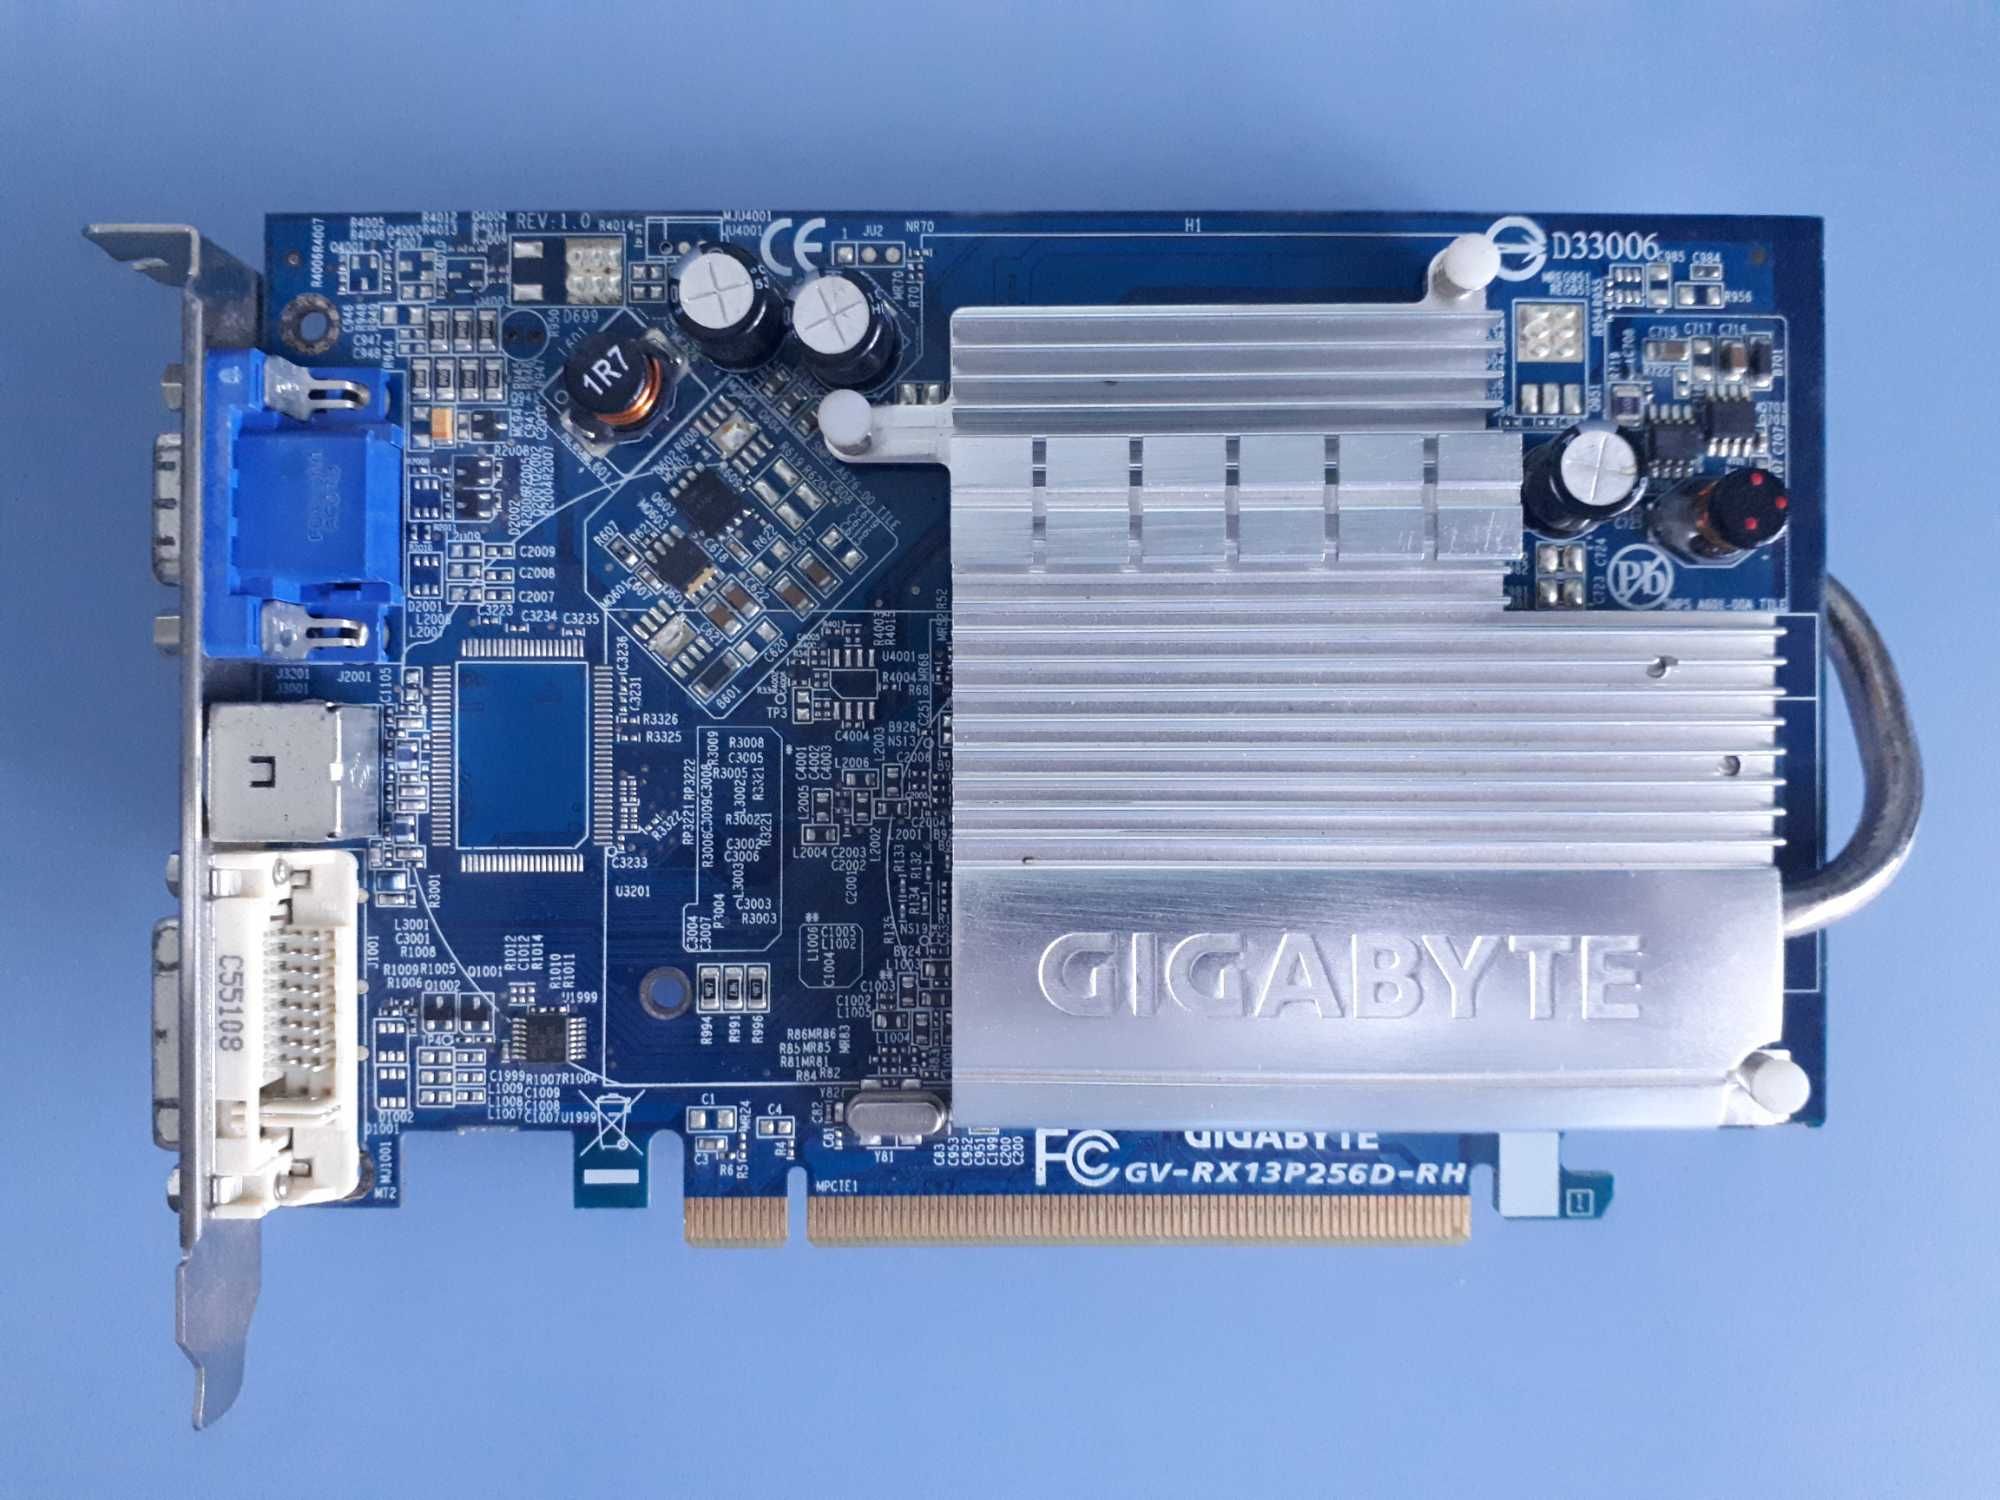 Відеокарта Gigabyte GV-RX13P256D-RH (може працює може ні)